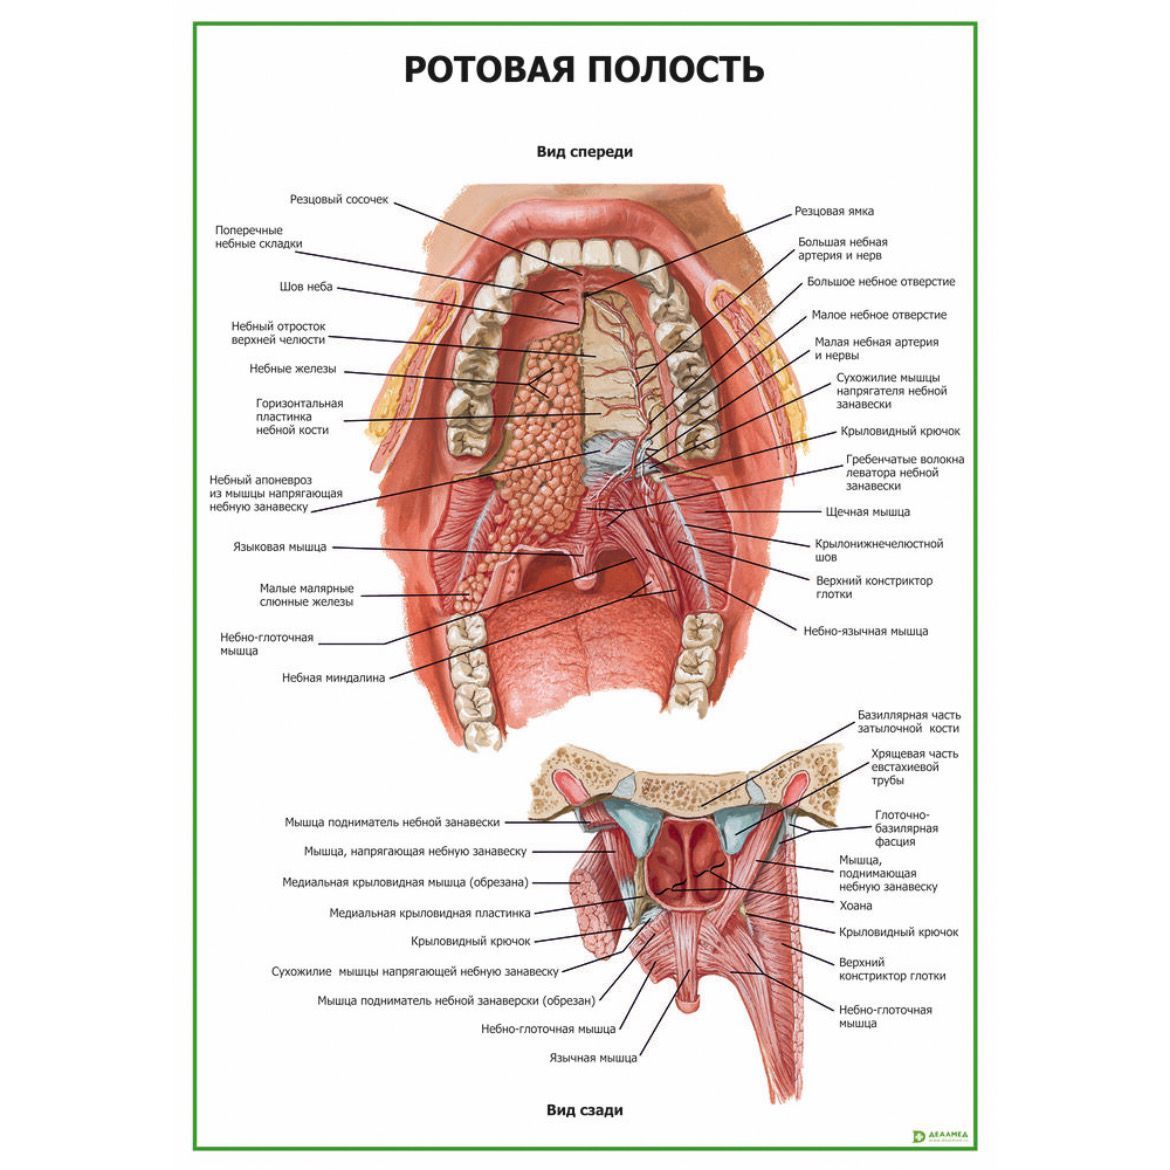 Анатомическая полости рта